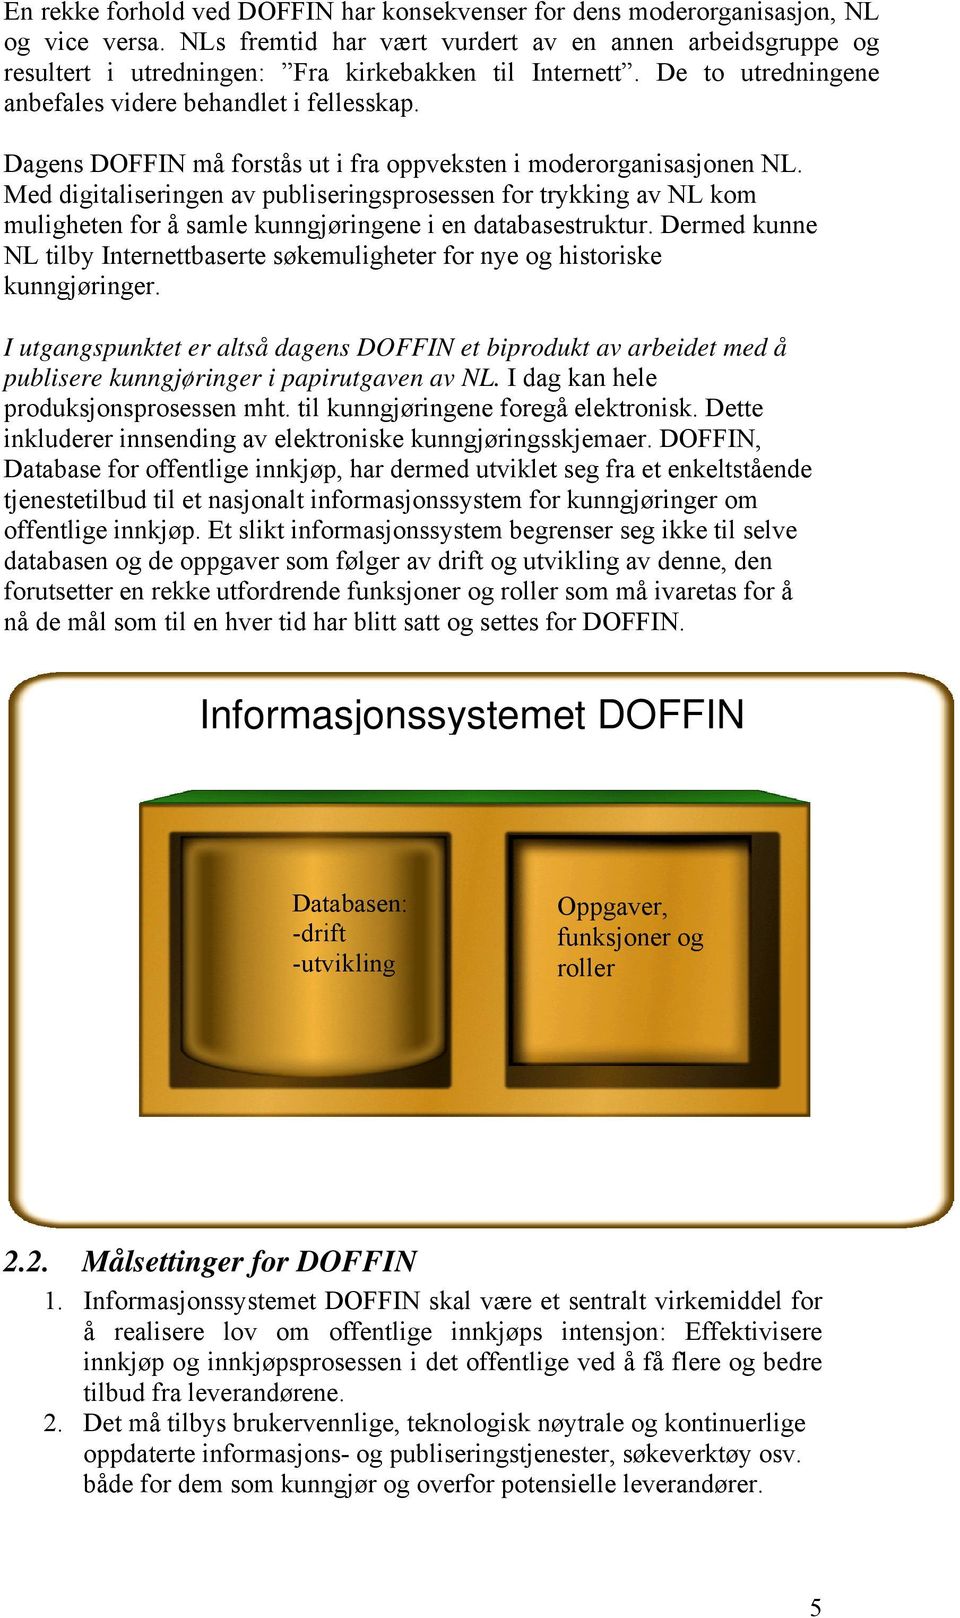 Dagens DOFFIN må forstås ut i fra oppveksten i moderorganisasjonen NL. Med digitaliseringen av publiseringsprosessen for trykking av NL kom muligheten for å samle kunngjøringene i en databasestruktur.